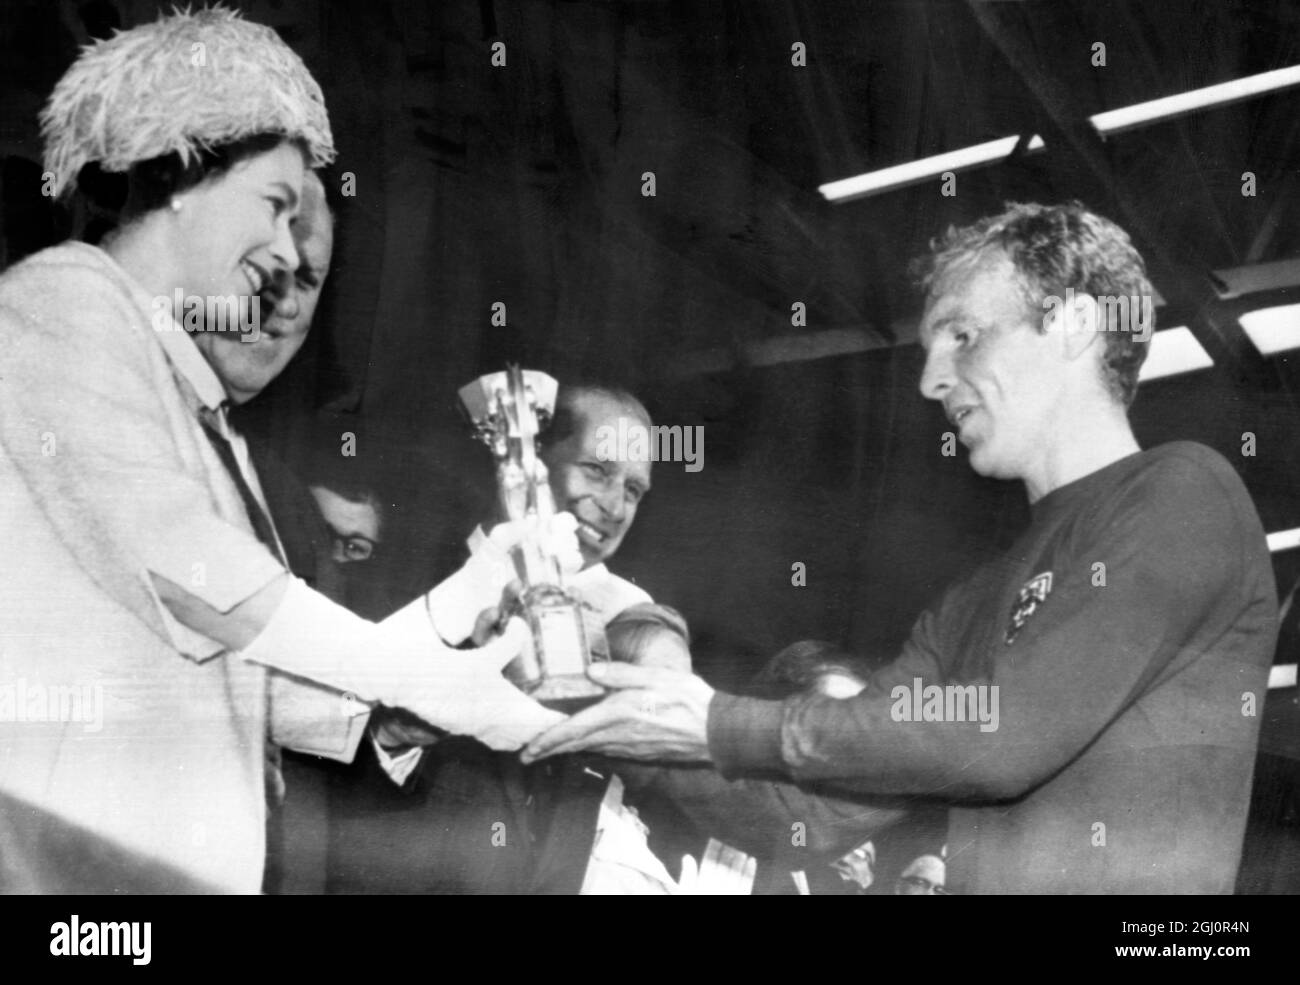 La regina presenta la coppa al Capitano d'Inghilterra. La regina Elisabetta II di Brigiain presenta il Trofeo Jules Rimet World Cup al Capitano d'Inghilterra Bobby Moore, dopo che l'Inghilterra ha sconfitto la Germania occidentale nella finale del torneo World Cup allo stadio Wembley di oggi. L'Inghilterra ha vinto 4-2. 30 luglio 1966 Foto Stock